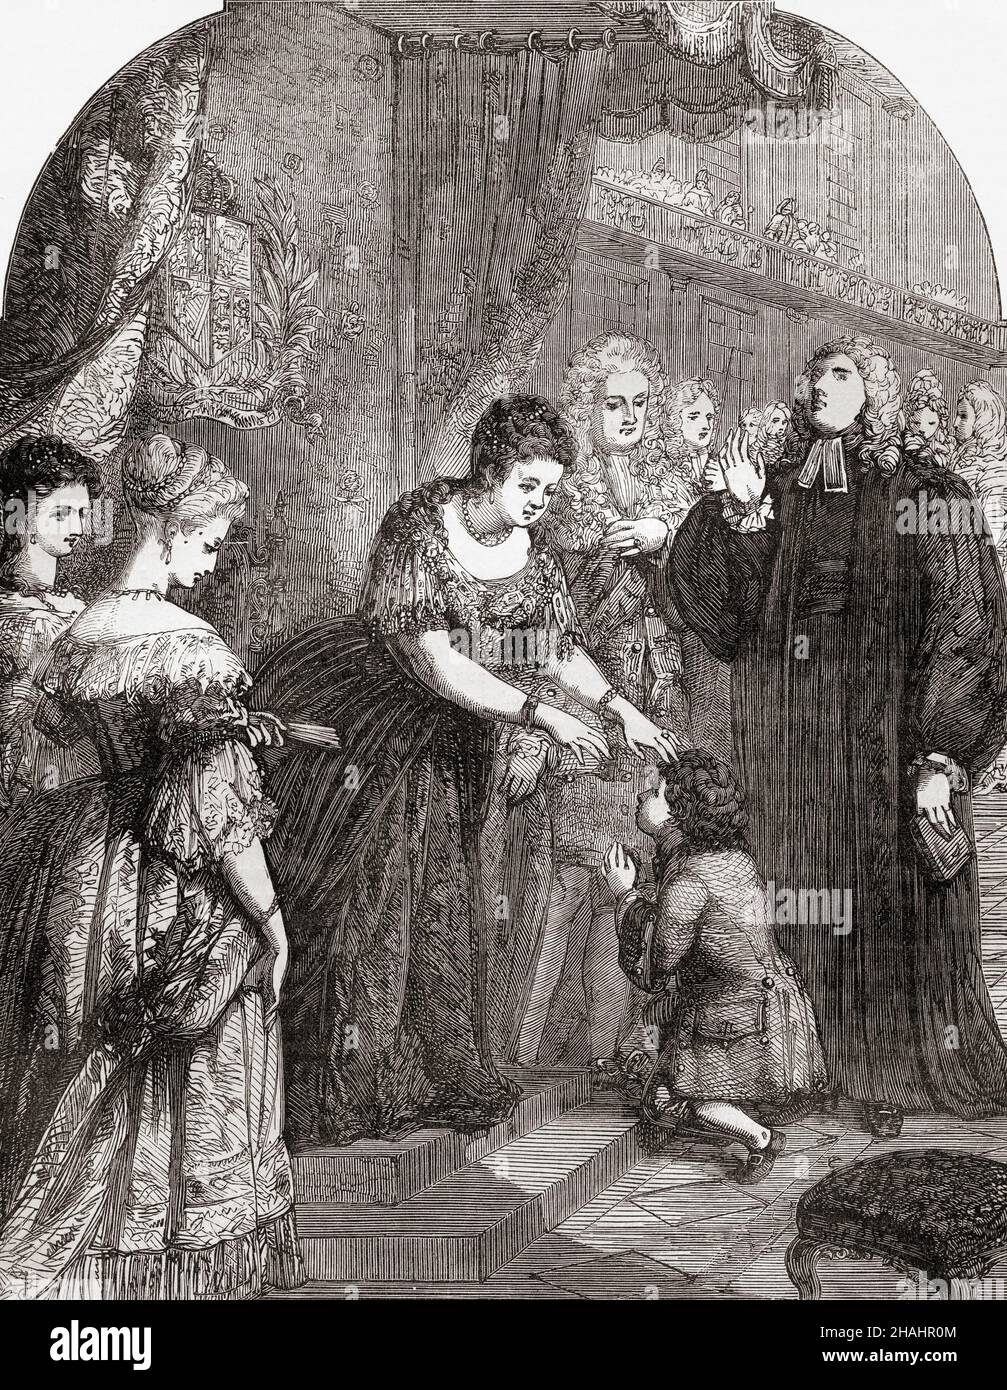 La reine Anne touchant le jeune Samuel Johnson pour le mal.Samuel Johnson a contracté le scrofula, également appelé le mal du roi parce qu'on croyait qu'il serait guéri s'il était touché par un monarque, et a reçu le 'toucher royal' ou 'toucher thaumaturgique' de la reine Anne en 1712.De Cassell's Illustrated History of England, publié vers 1890. Banque D'Images